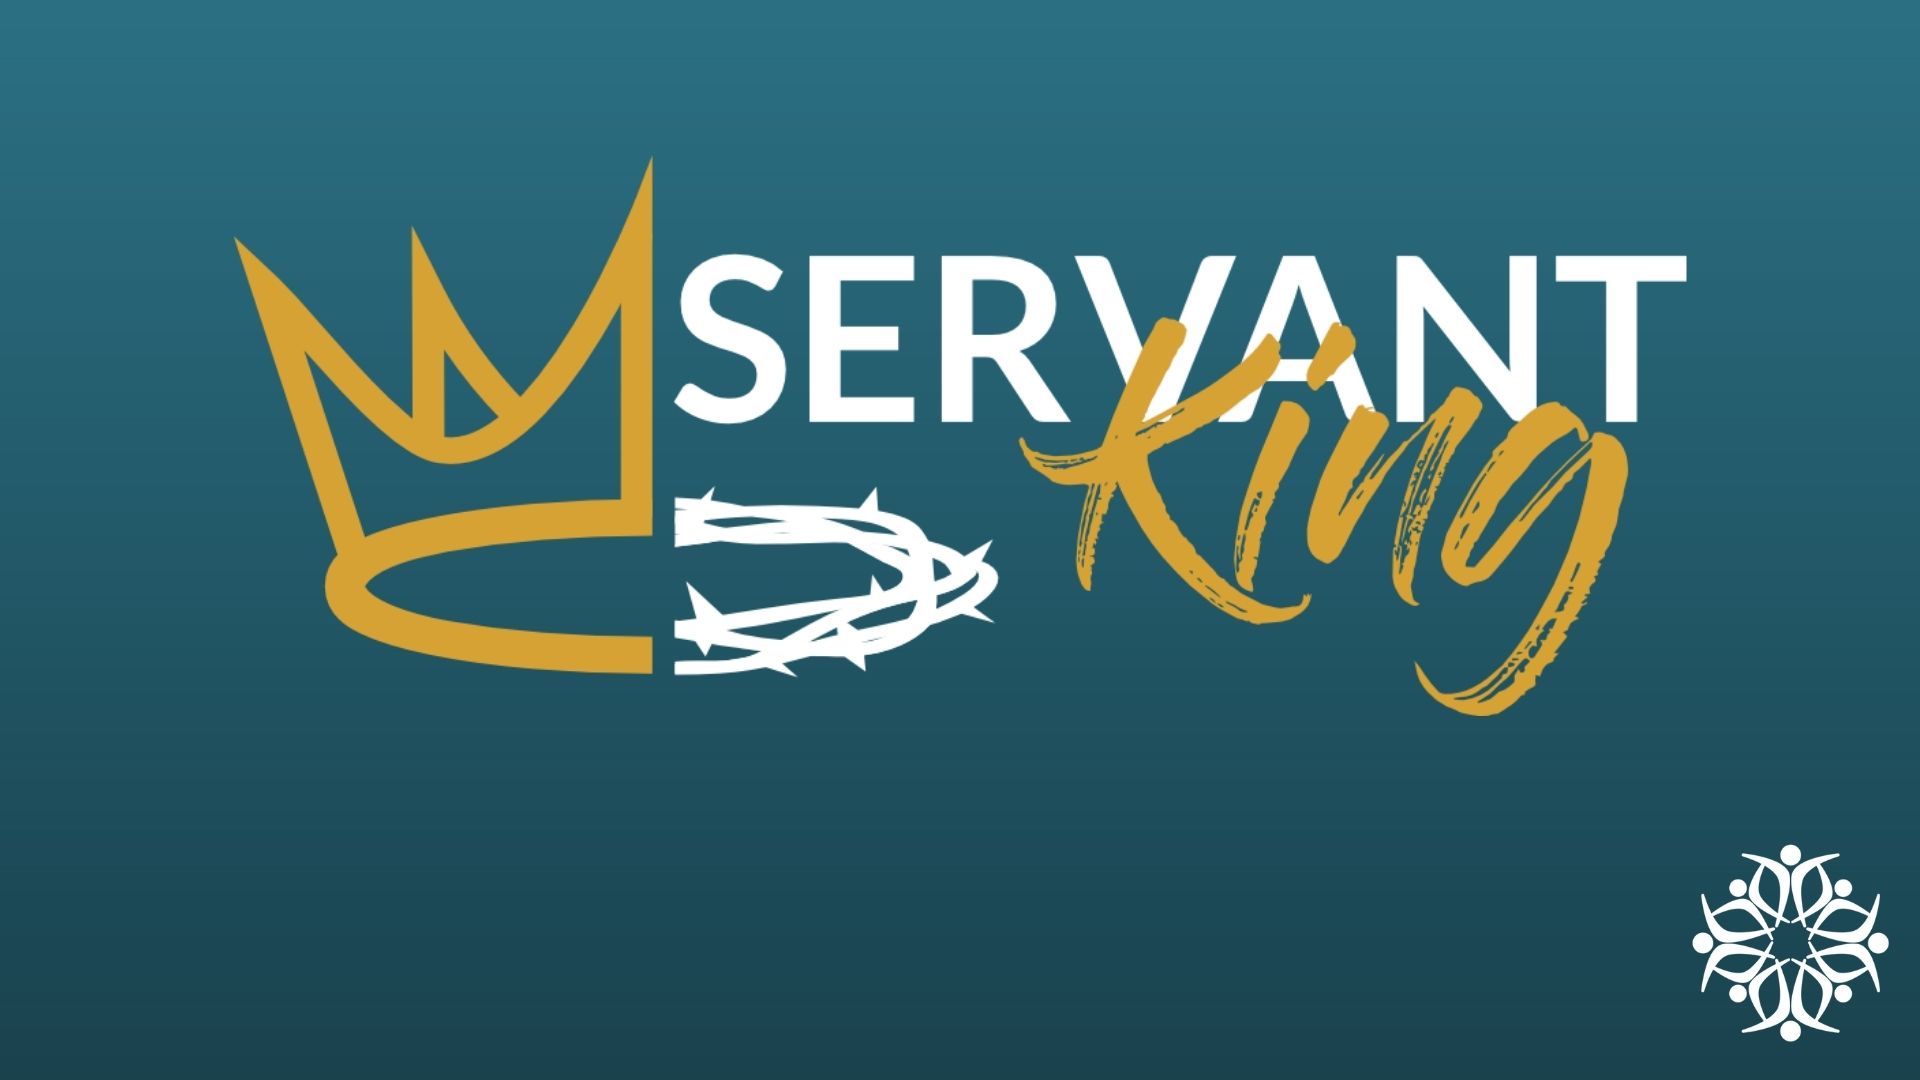 The Servant King’s Liberating Grace